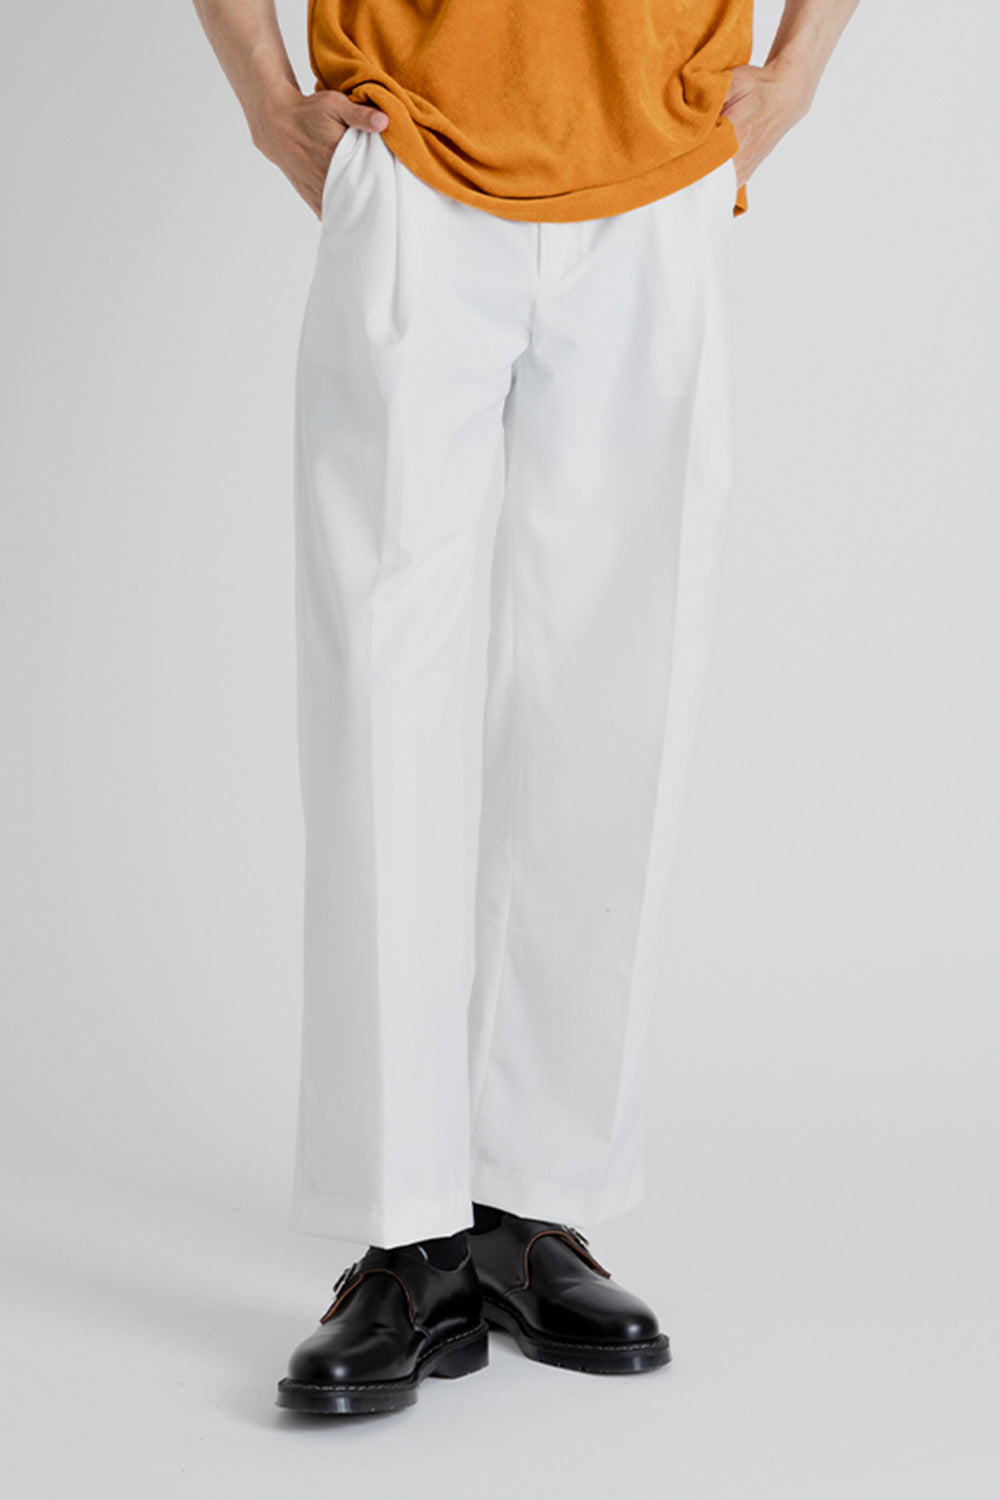 Frizmworks OG One Tuck Wide Slack Pants in White